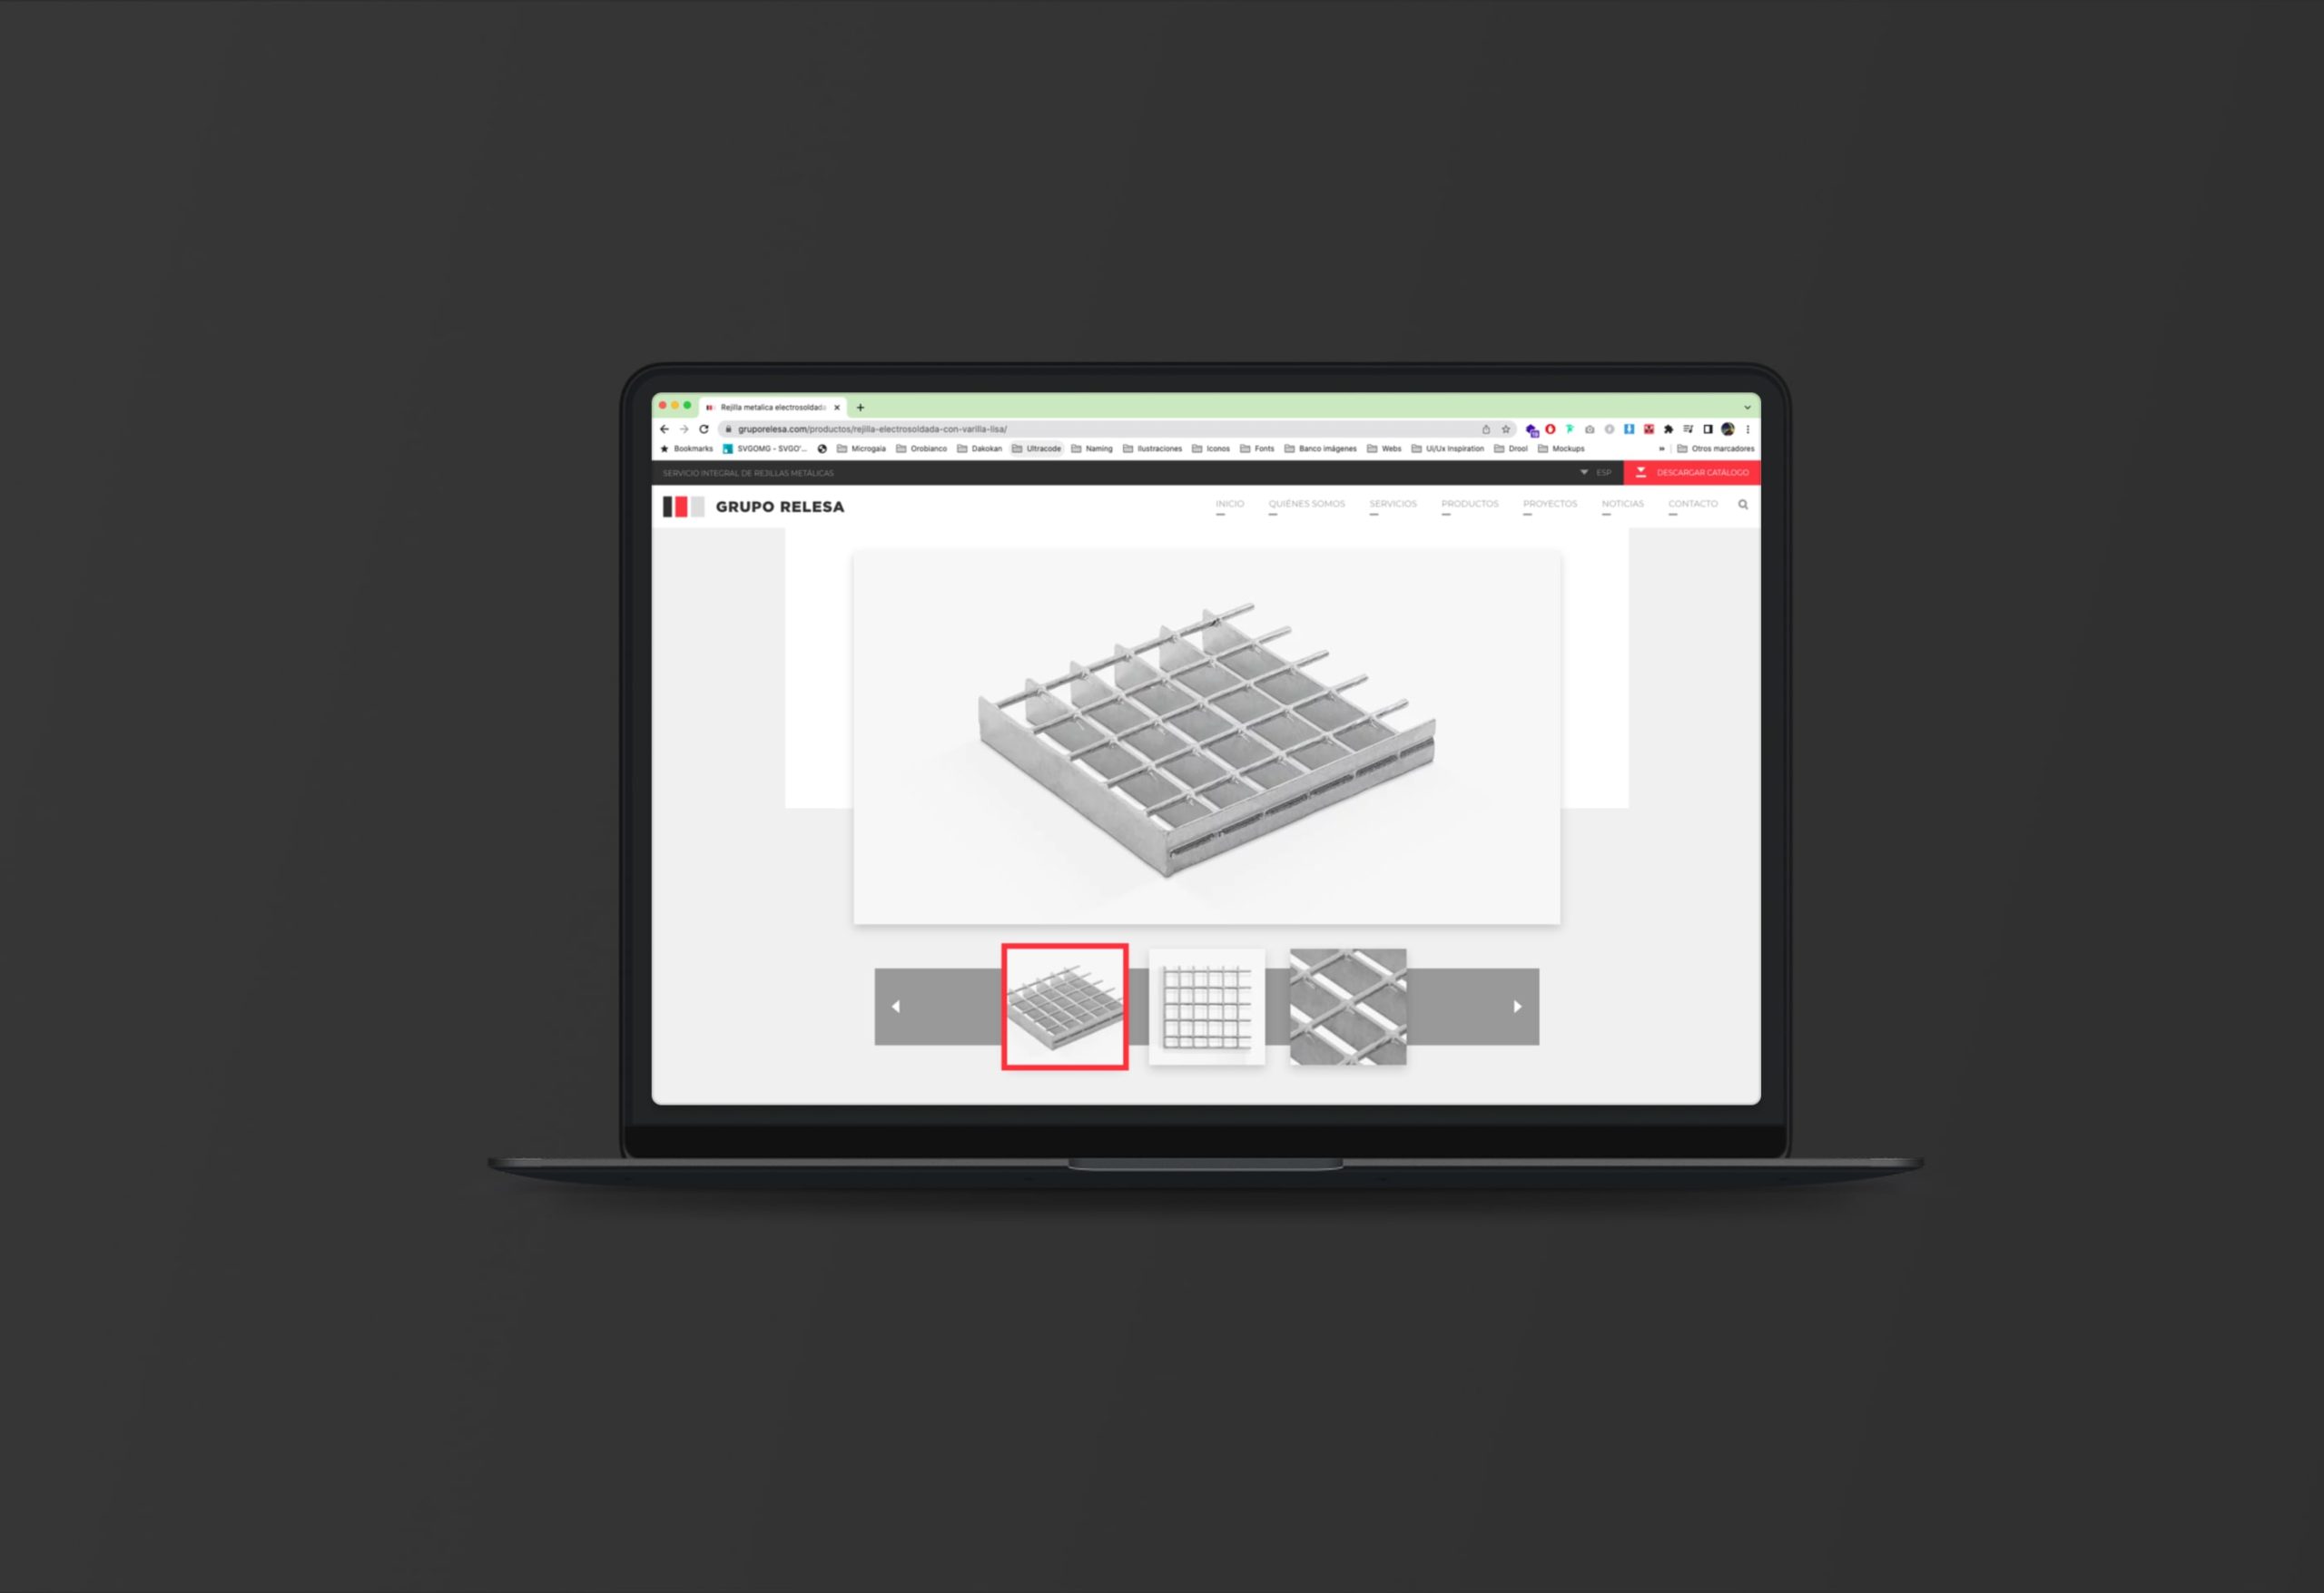 Detalles de un producto en la web de Grupo Relesa visualizado en un portátil